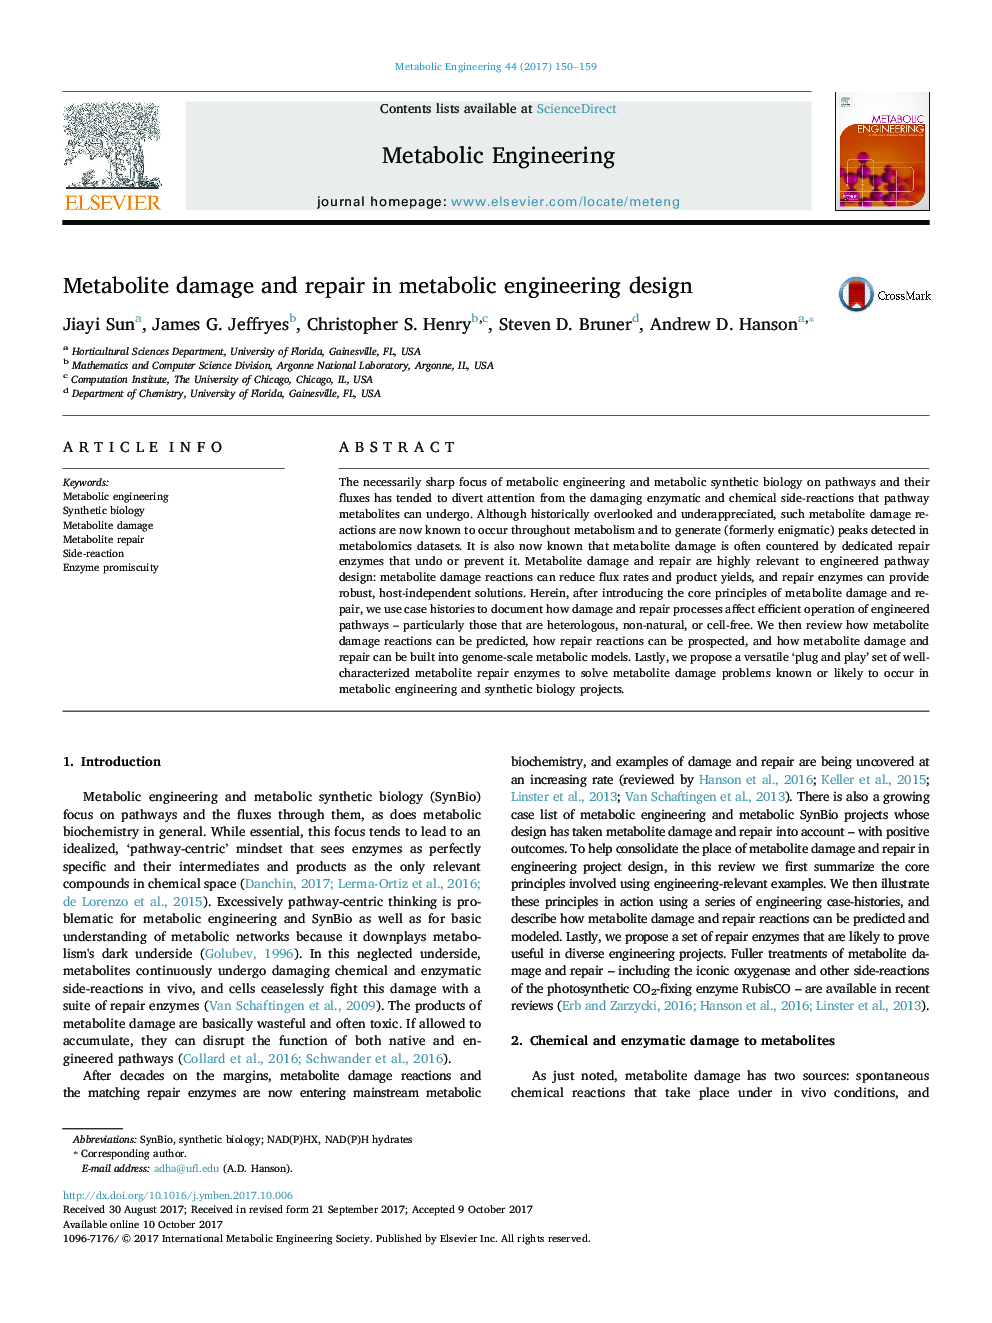 آسیب متابولیت و تعمیر در طراحی مهندسی متابولیک